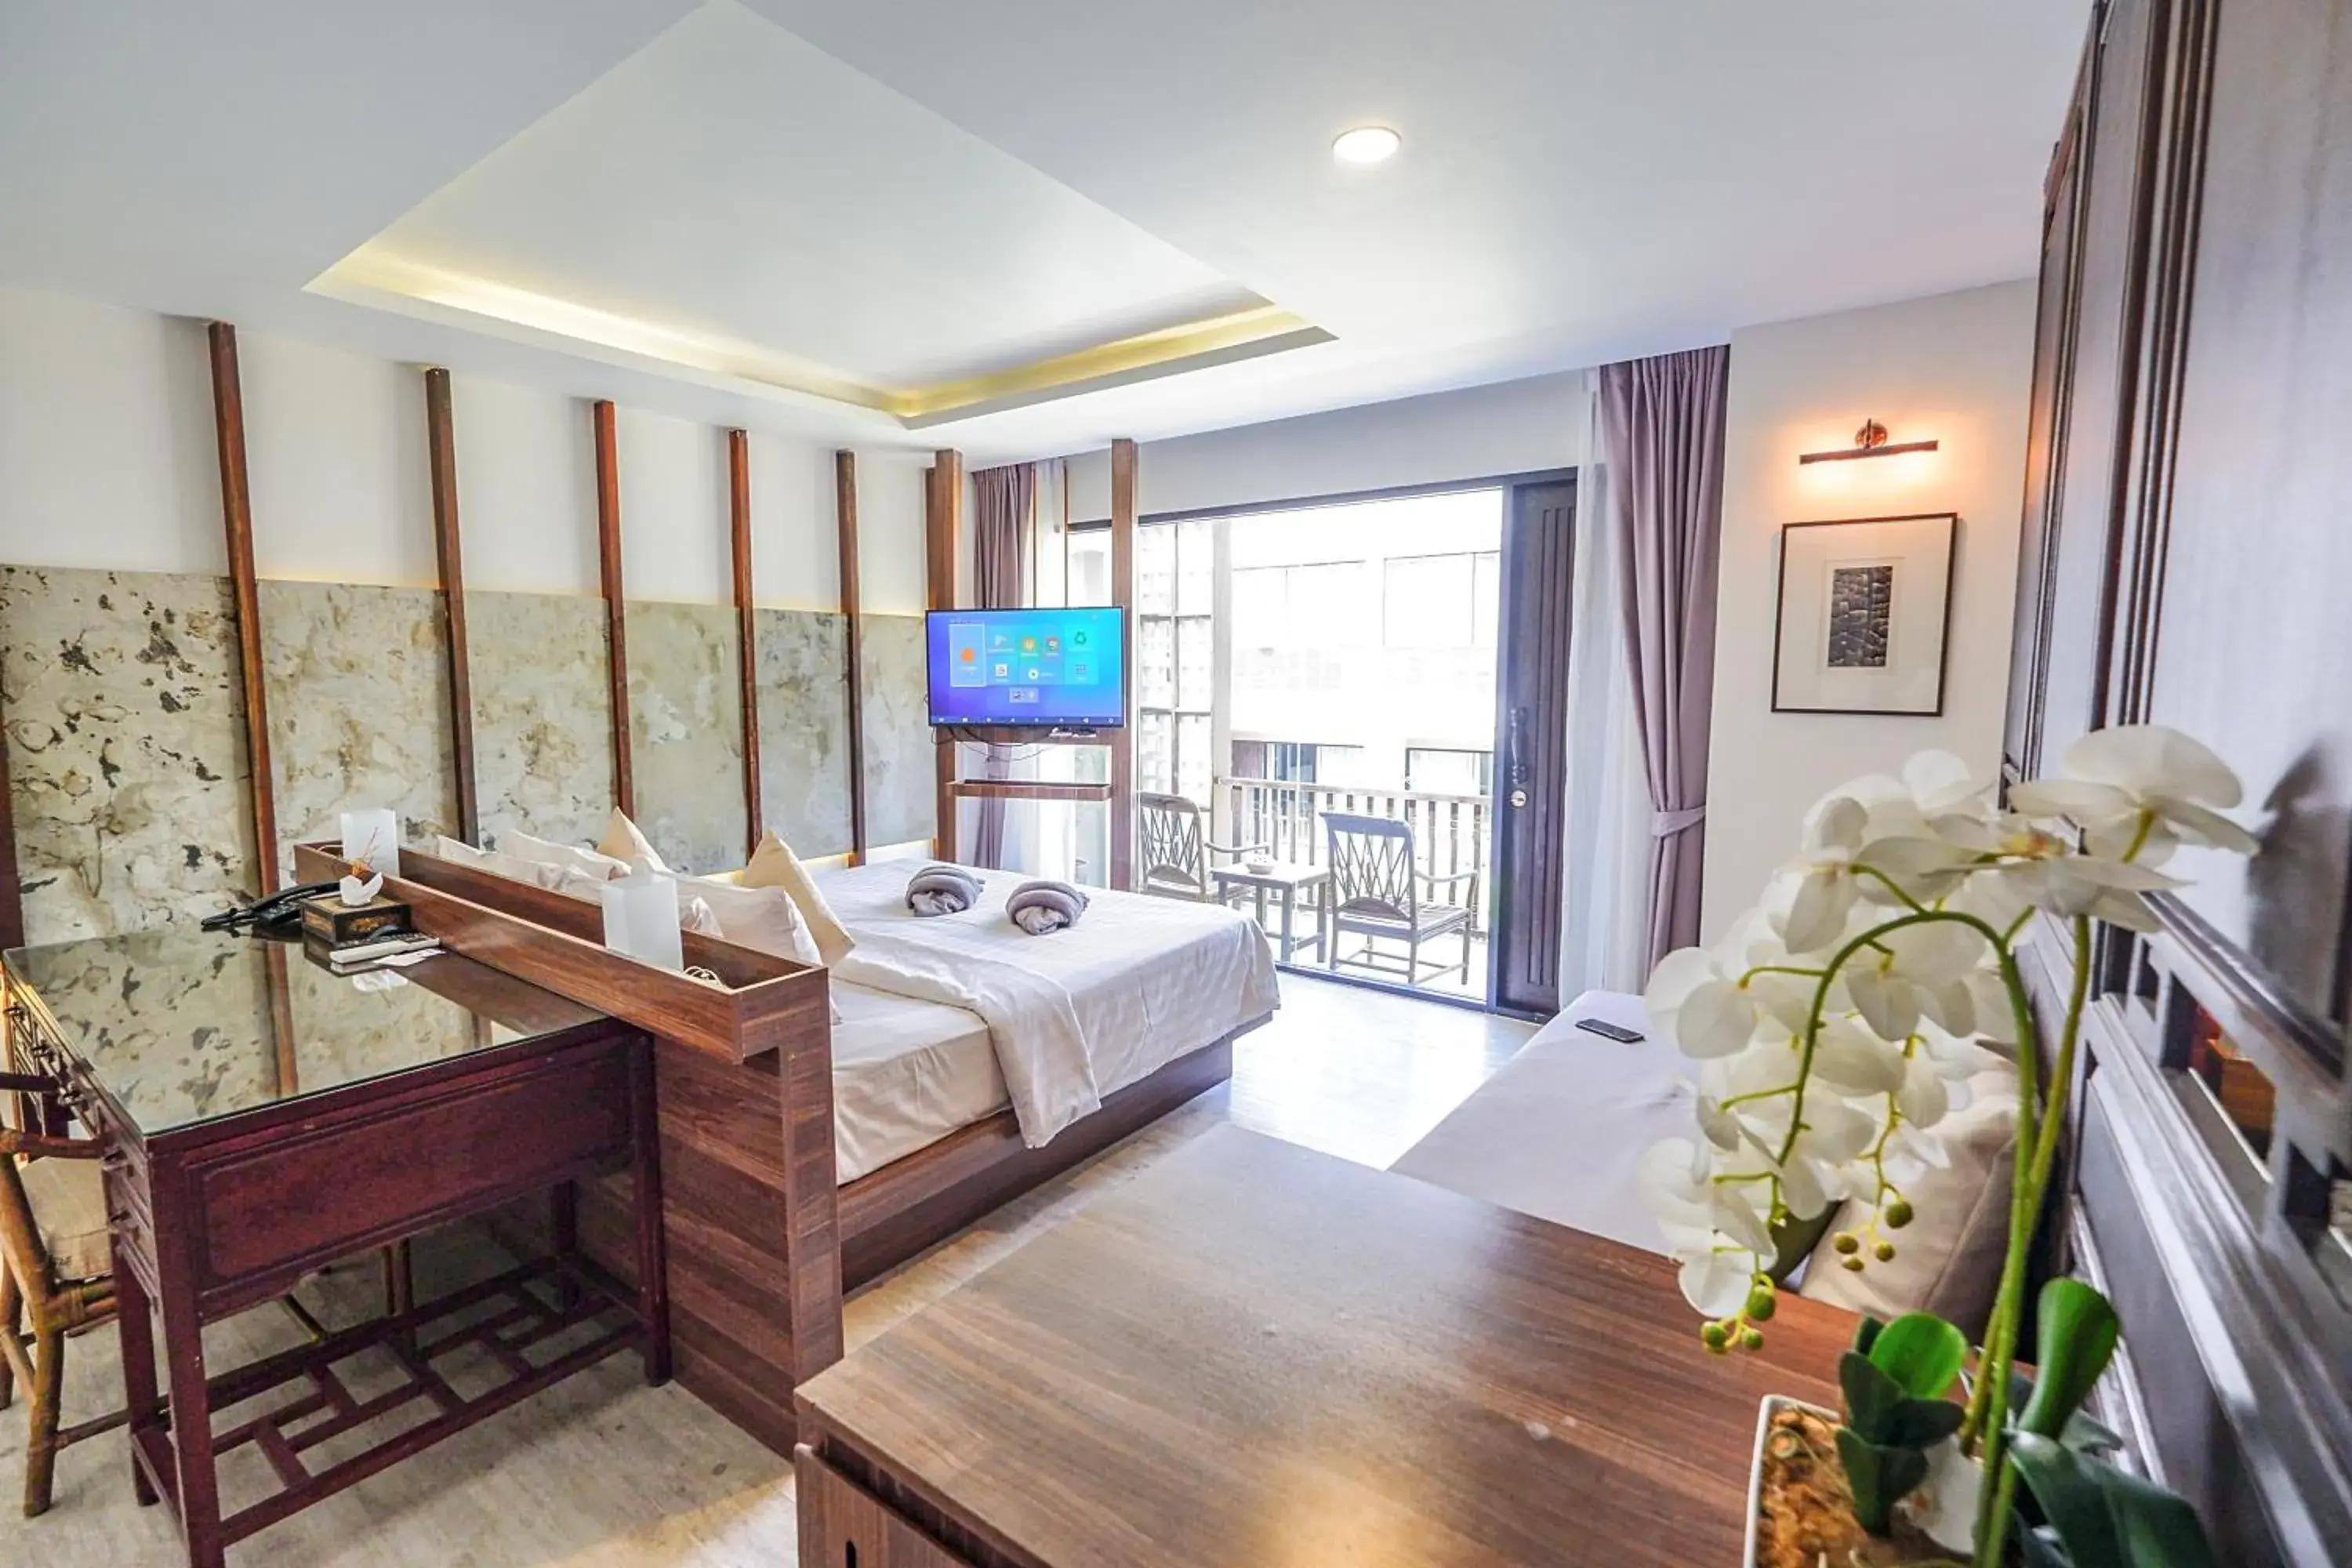 Living room in SriLanta Resort and Spa